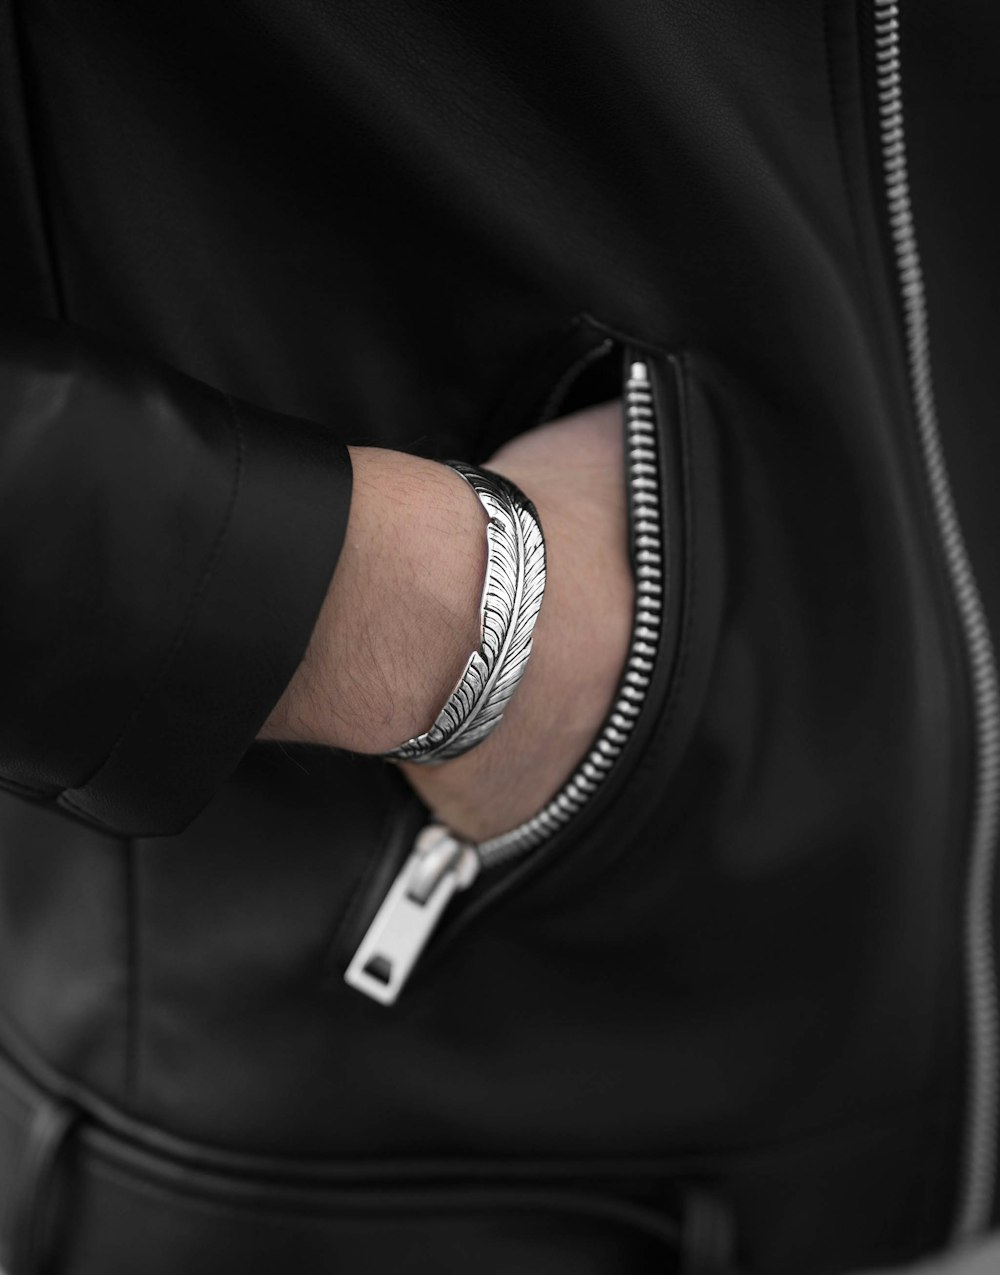 Persona che indossa una custodia in alluminio argentato Apple Watch con cinturino sportivo bianco